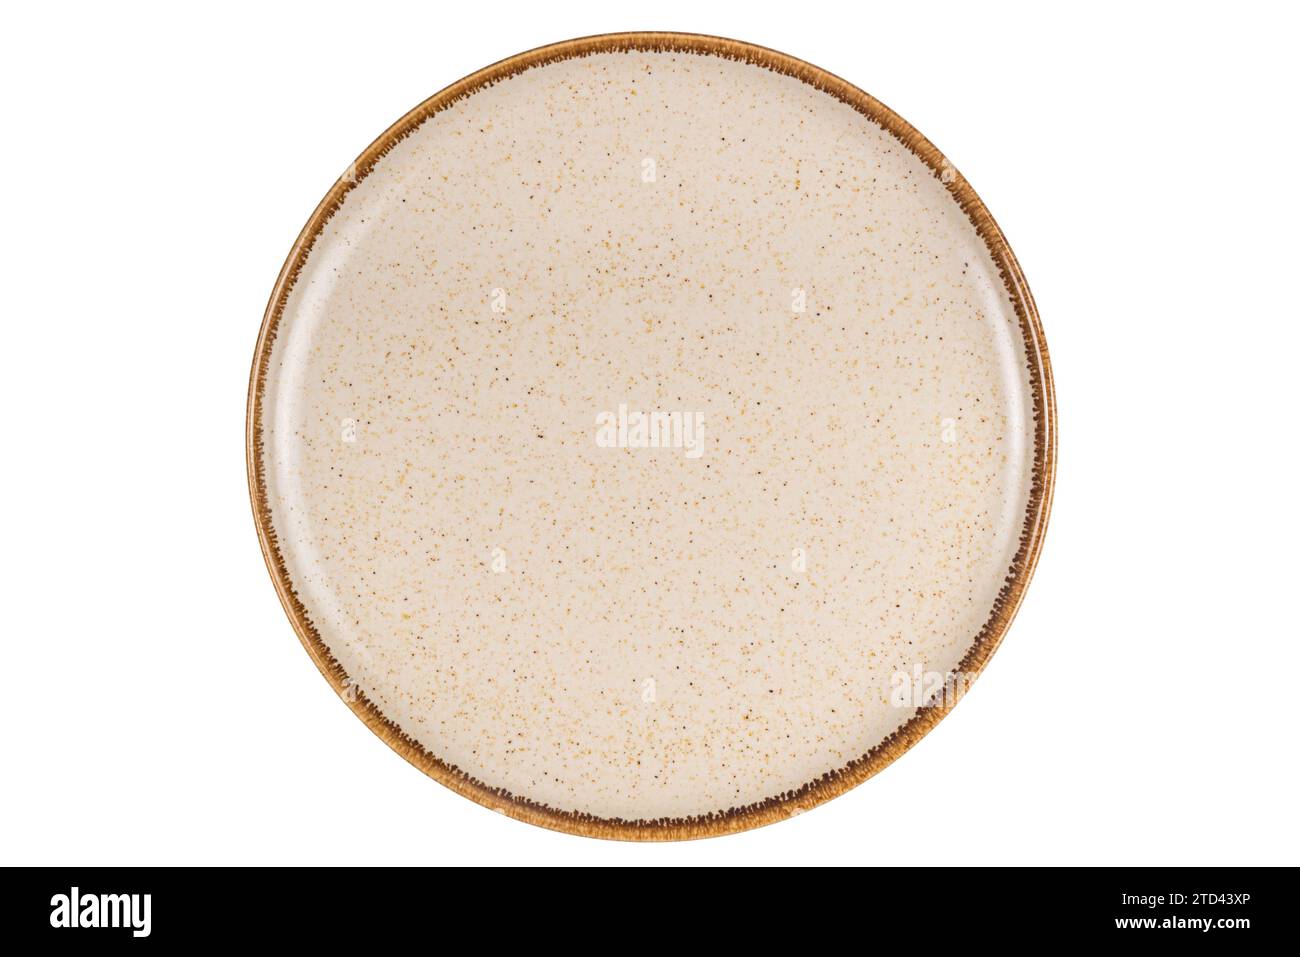 Vue de dessus de la plaque en céramique brune à pois ronde simple vide avec bord brun isolé sur fond blanc avec chemin de détourage. Banque D'Images